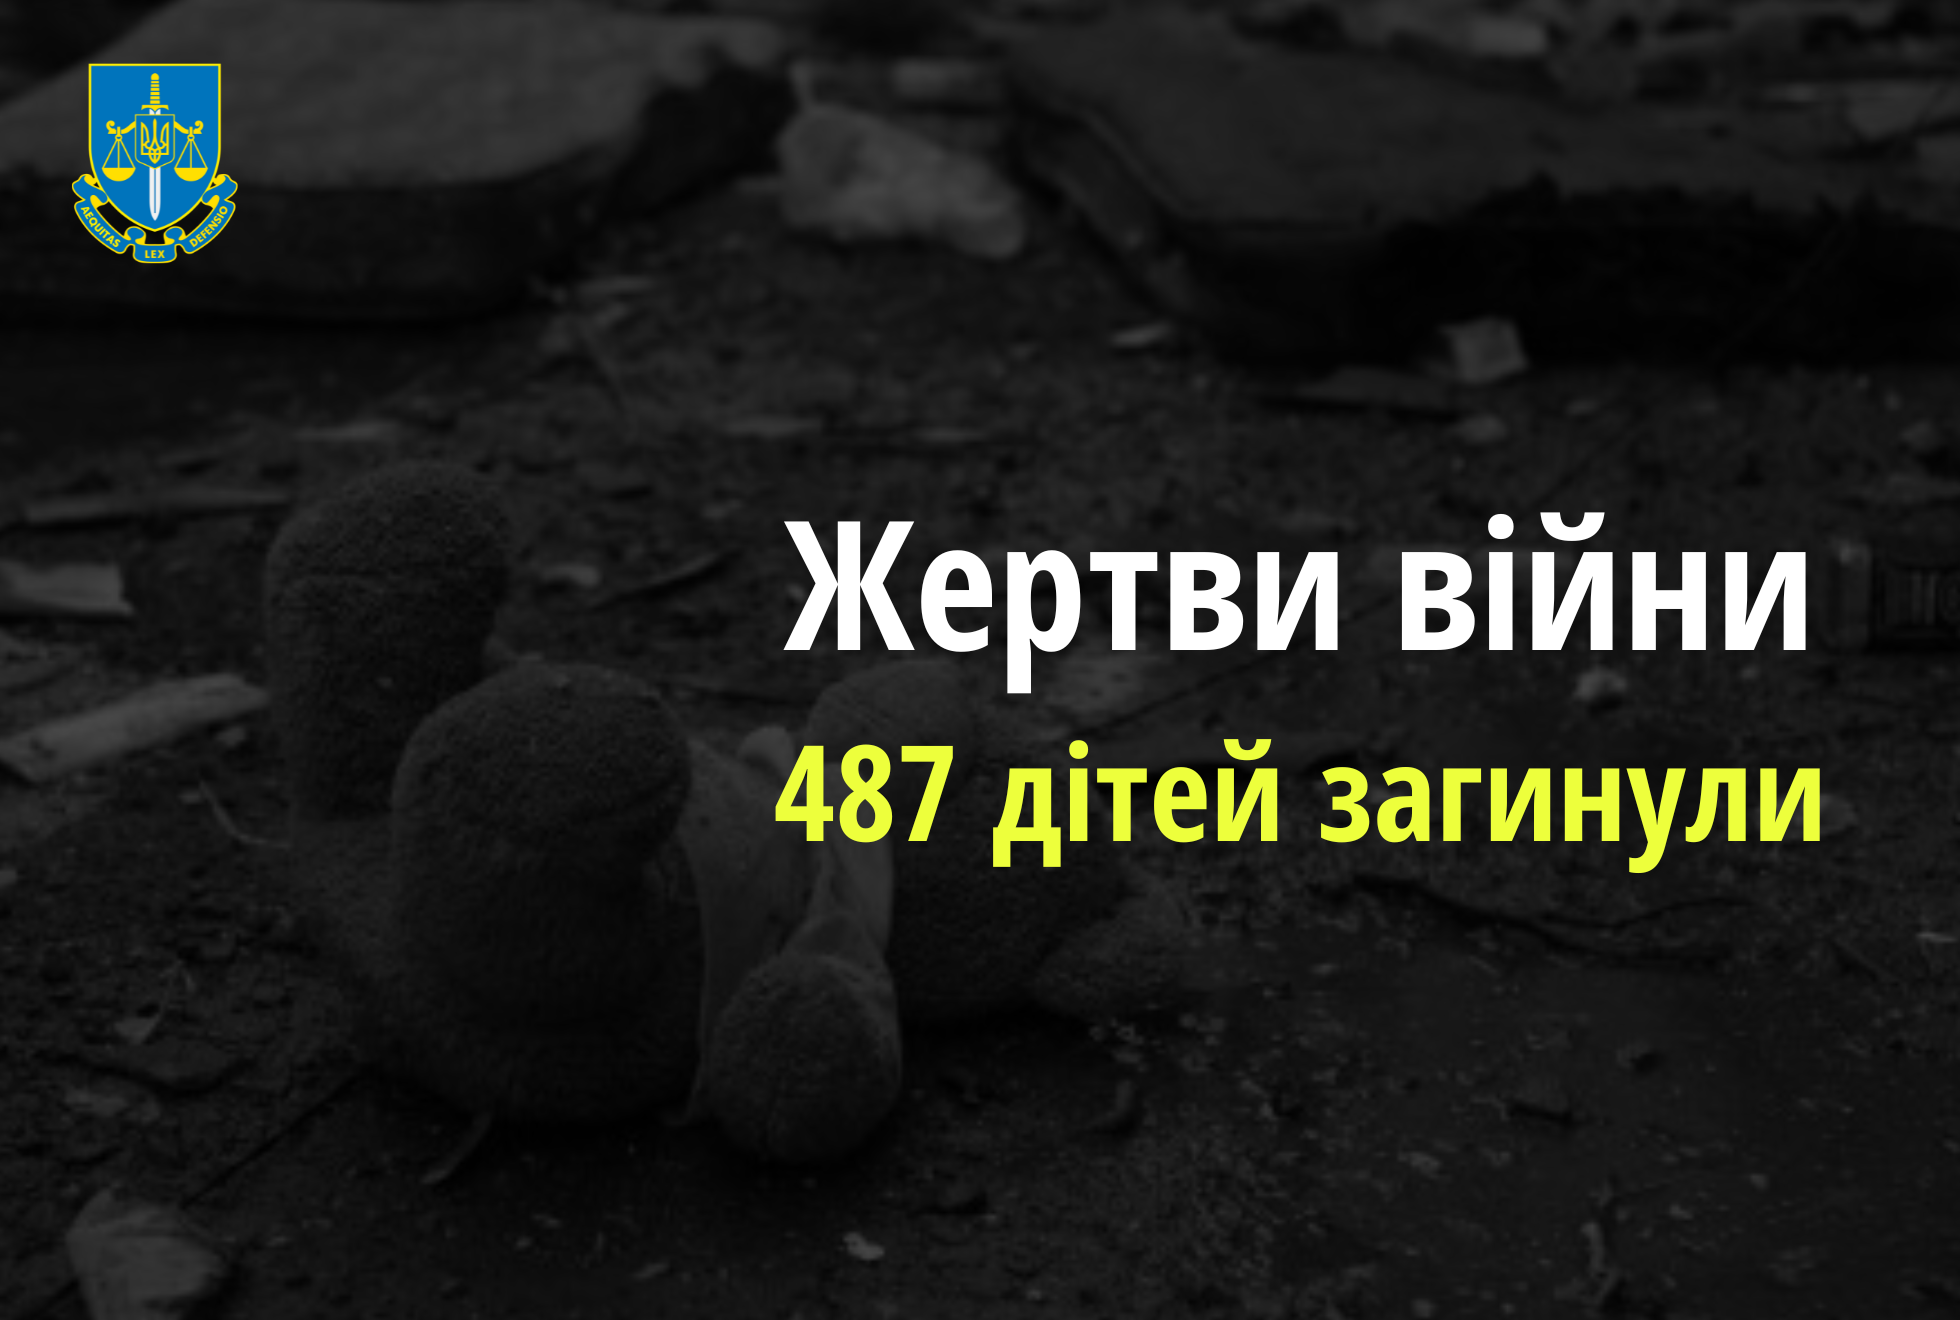 Ювенальні прокурори: 487 дітей загинули  в Україні внаслідок збройної агресії рф